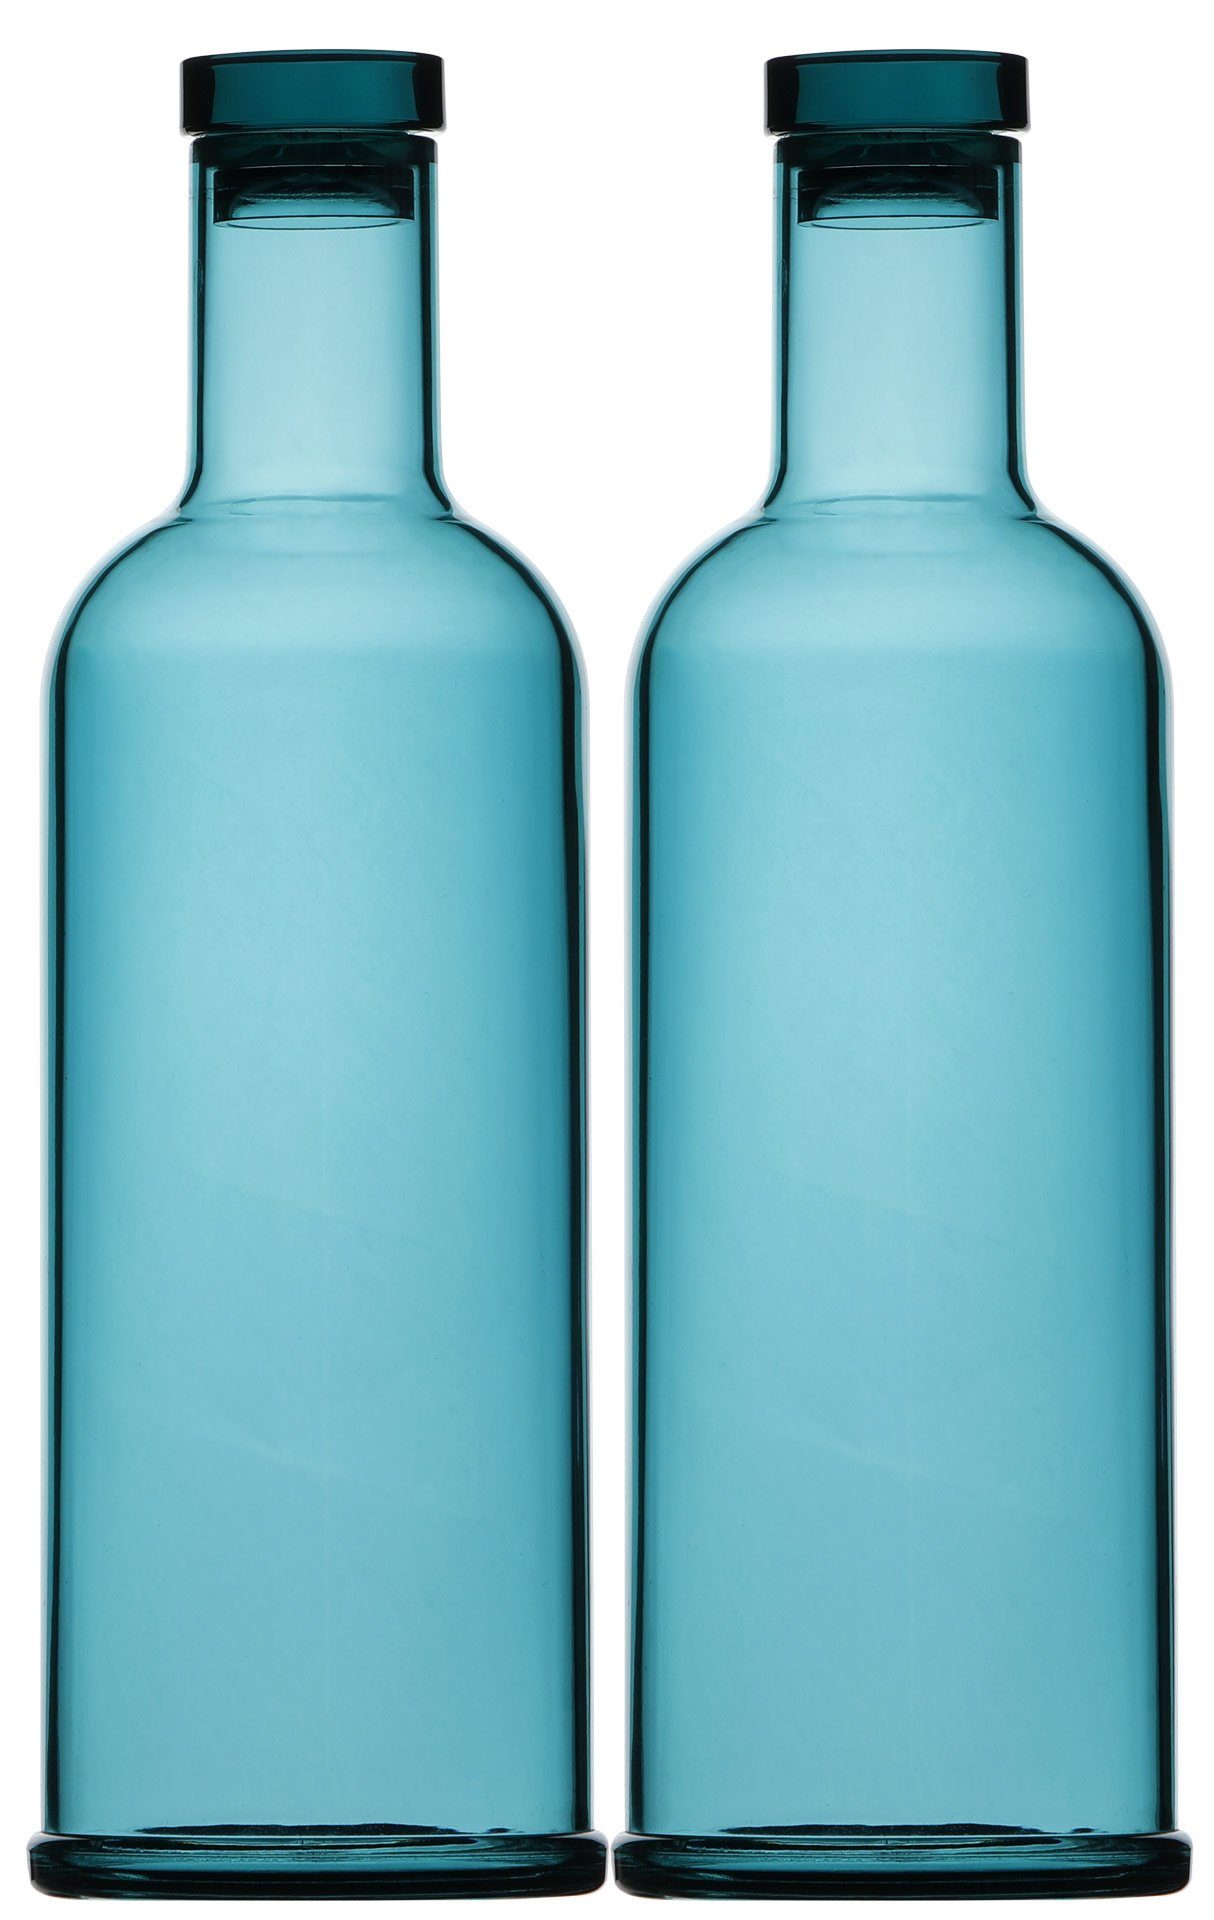 Marine Business Trinkflasche Zwei Flaschen Bahamas Turquoise